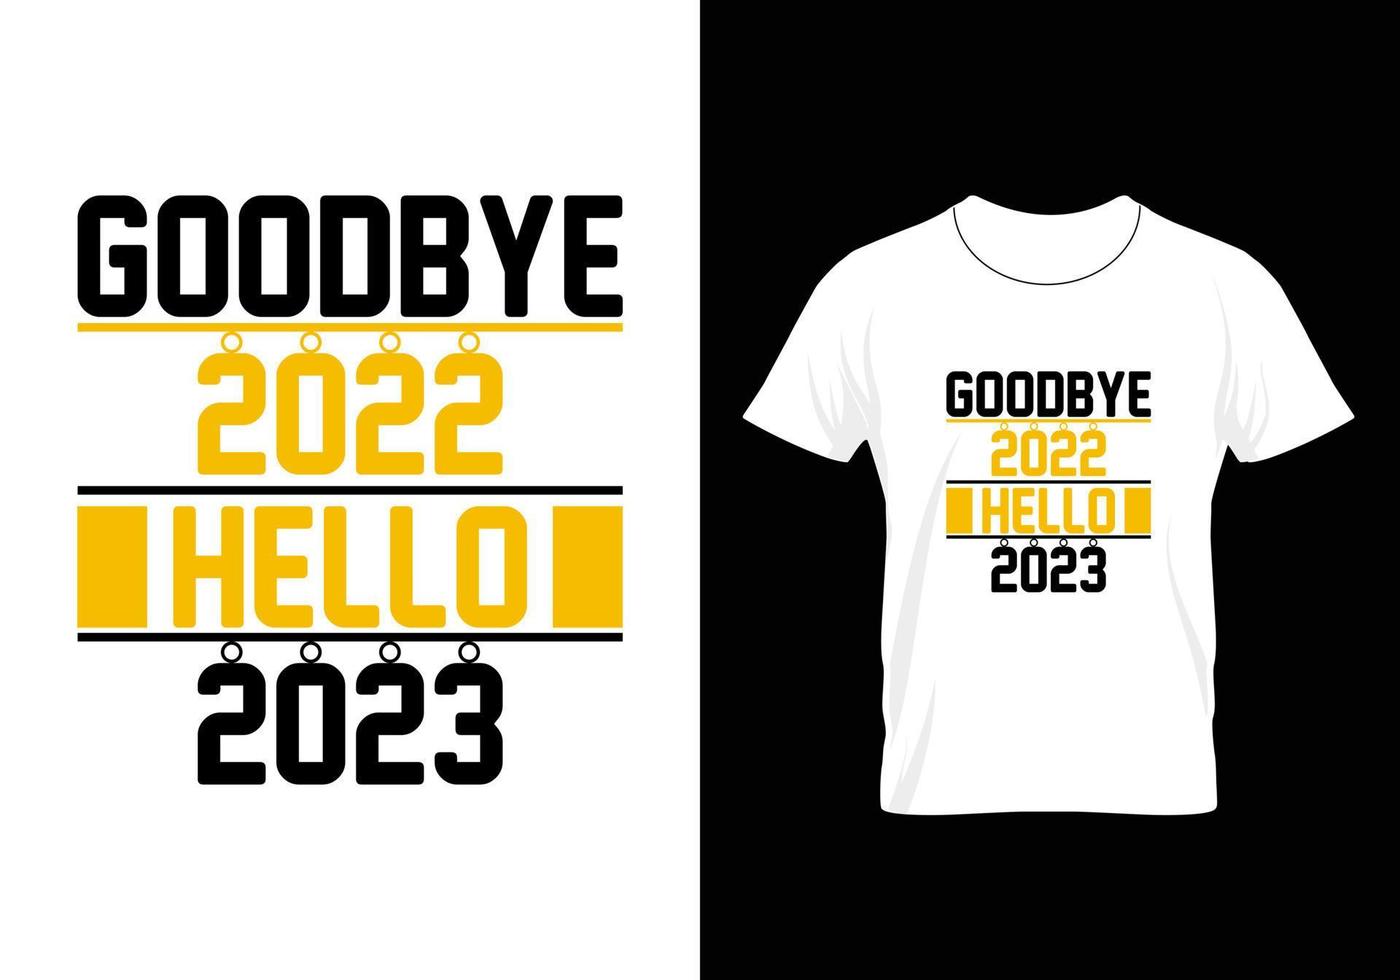 meilleur design de t-shirt typographie noël et bonne année vecteur